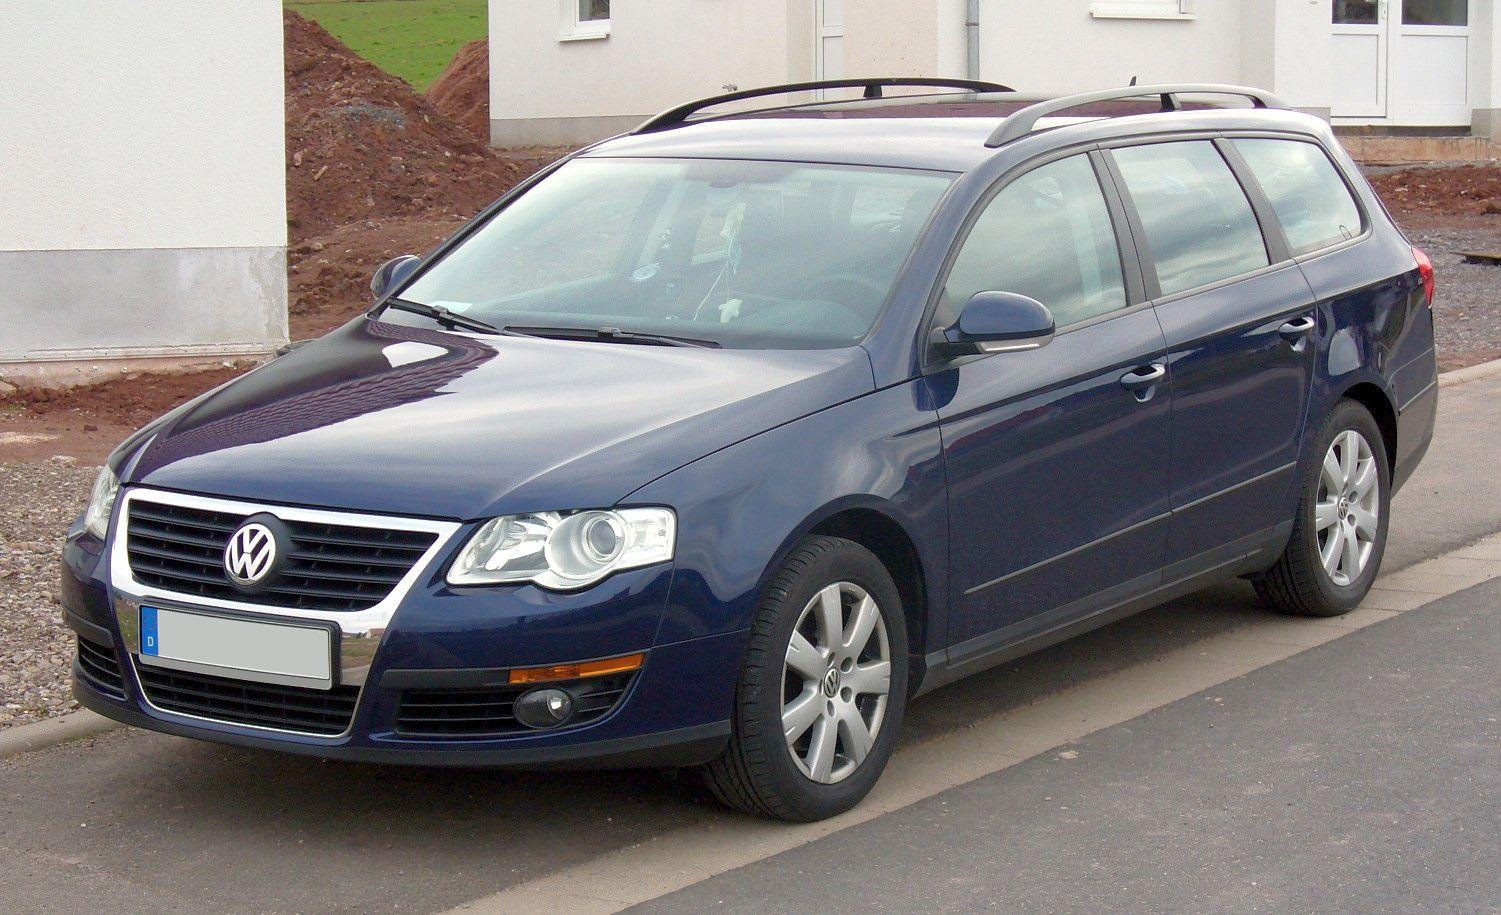 Фольксваген б6 1.6. Фольксваген Пассат b6 универсал. Volkswagen Passat b6 variant. Volkswagen Passat variant (b6) 2008. Фольксваген ПСАДА б6 универсал.